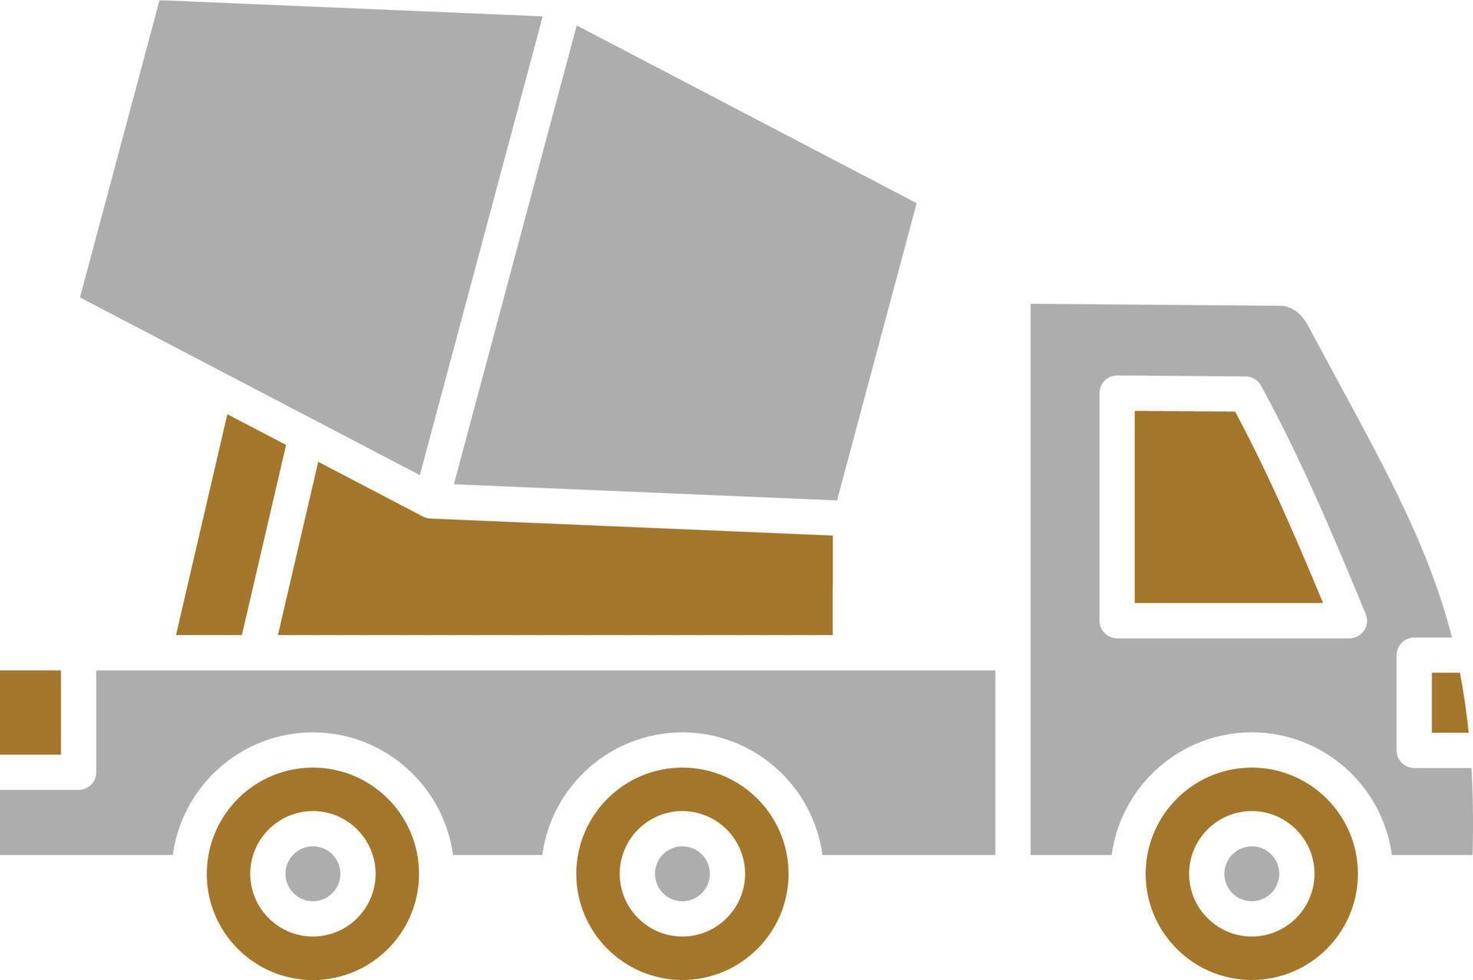 betonmixer vrachtwagen pictogramstijl vector